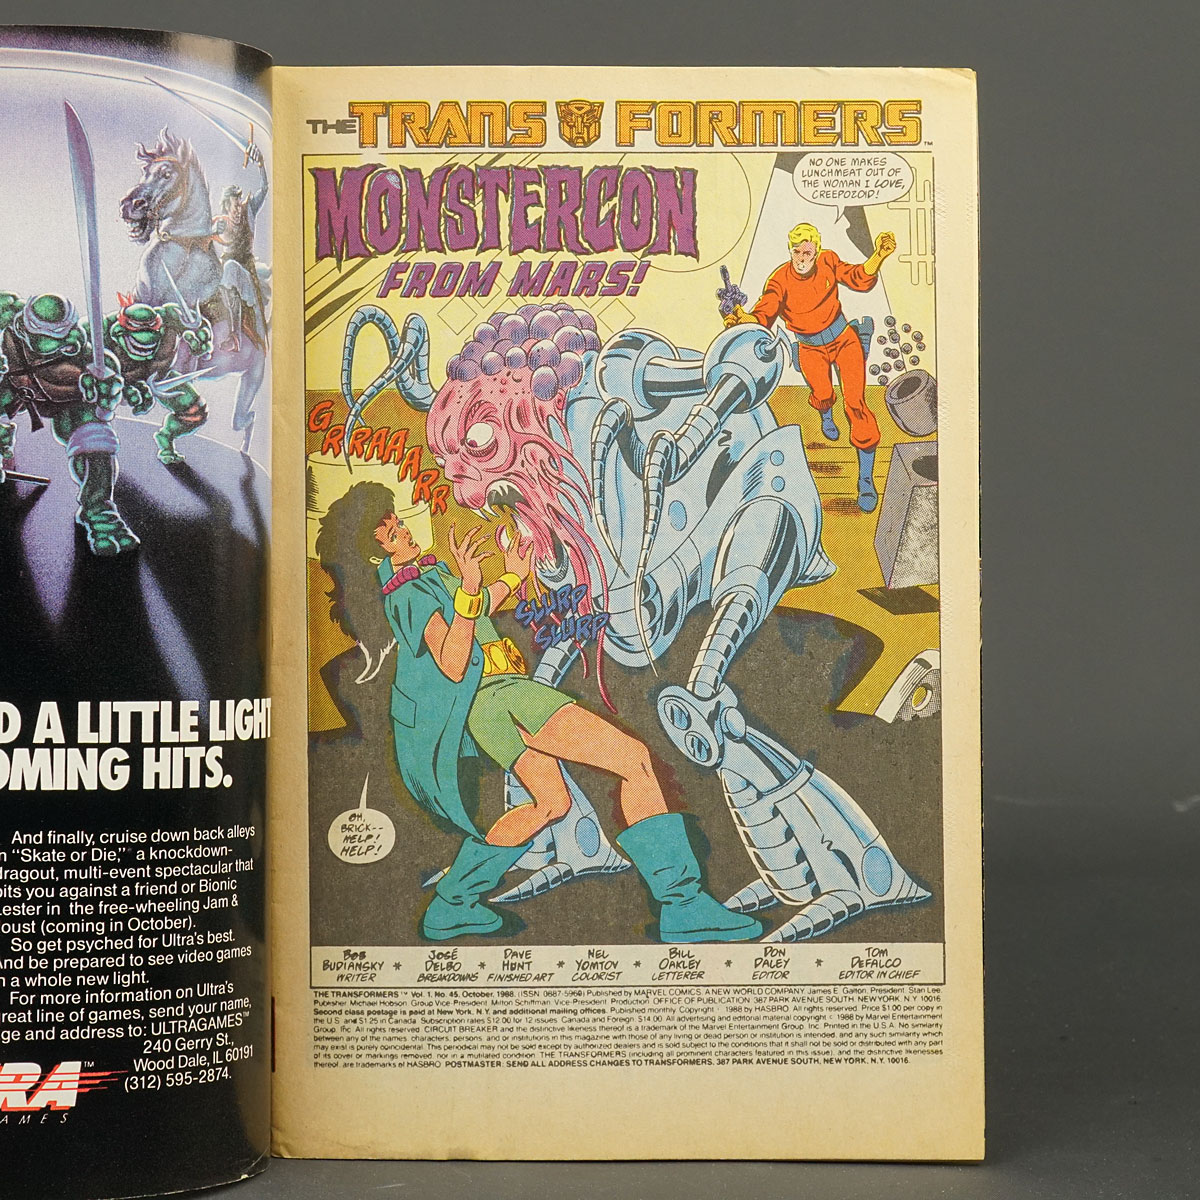 THE TRANSFORMERS #45 Marvel Comics 1988 (W/CA) Budiansky (A) Delbo 231208C